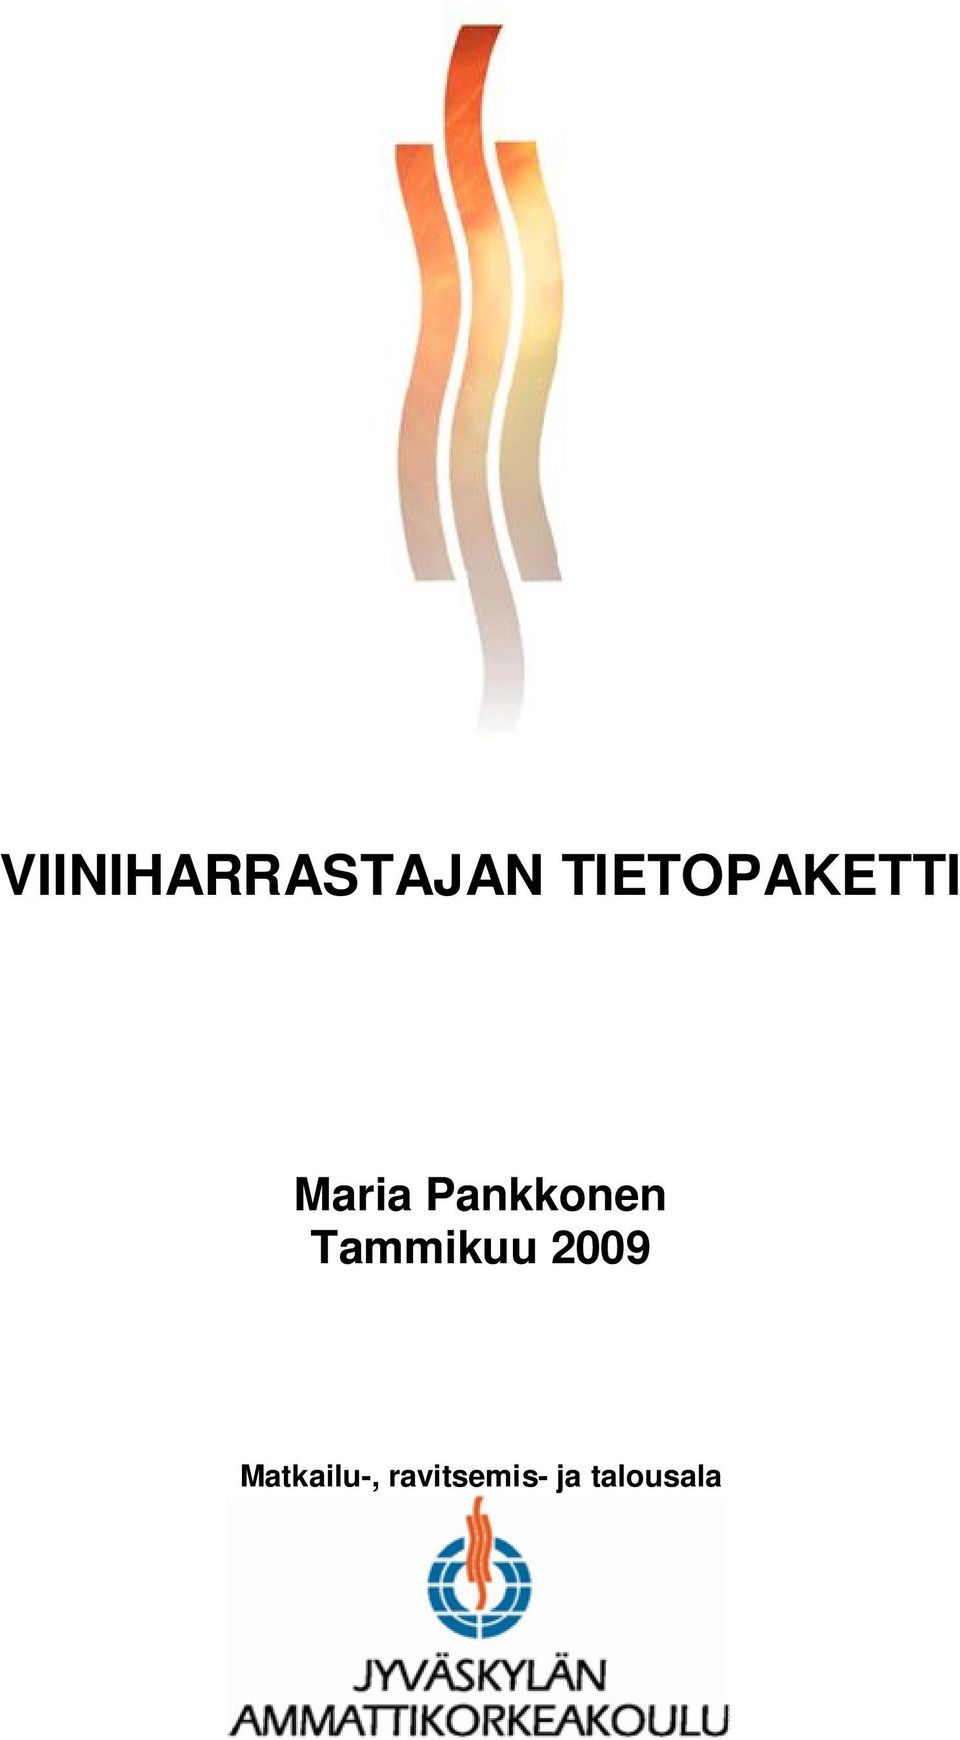 Pankkonen Tammikuu 2009